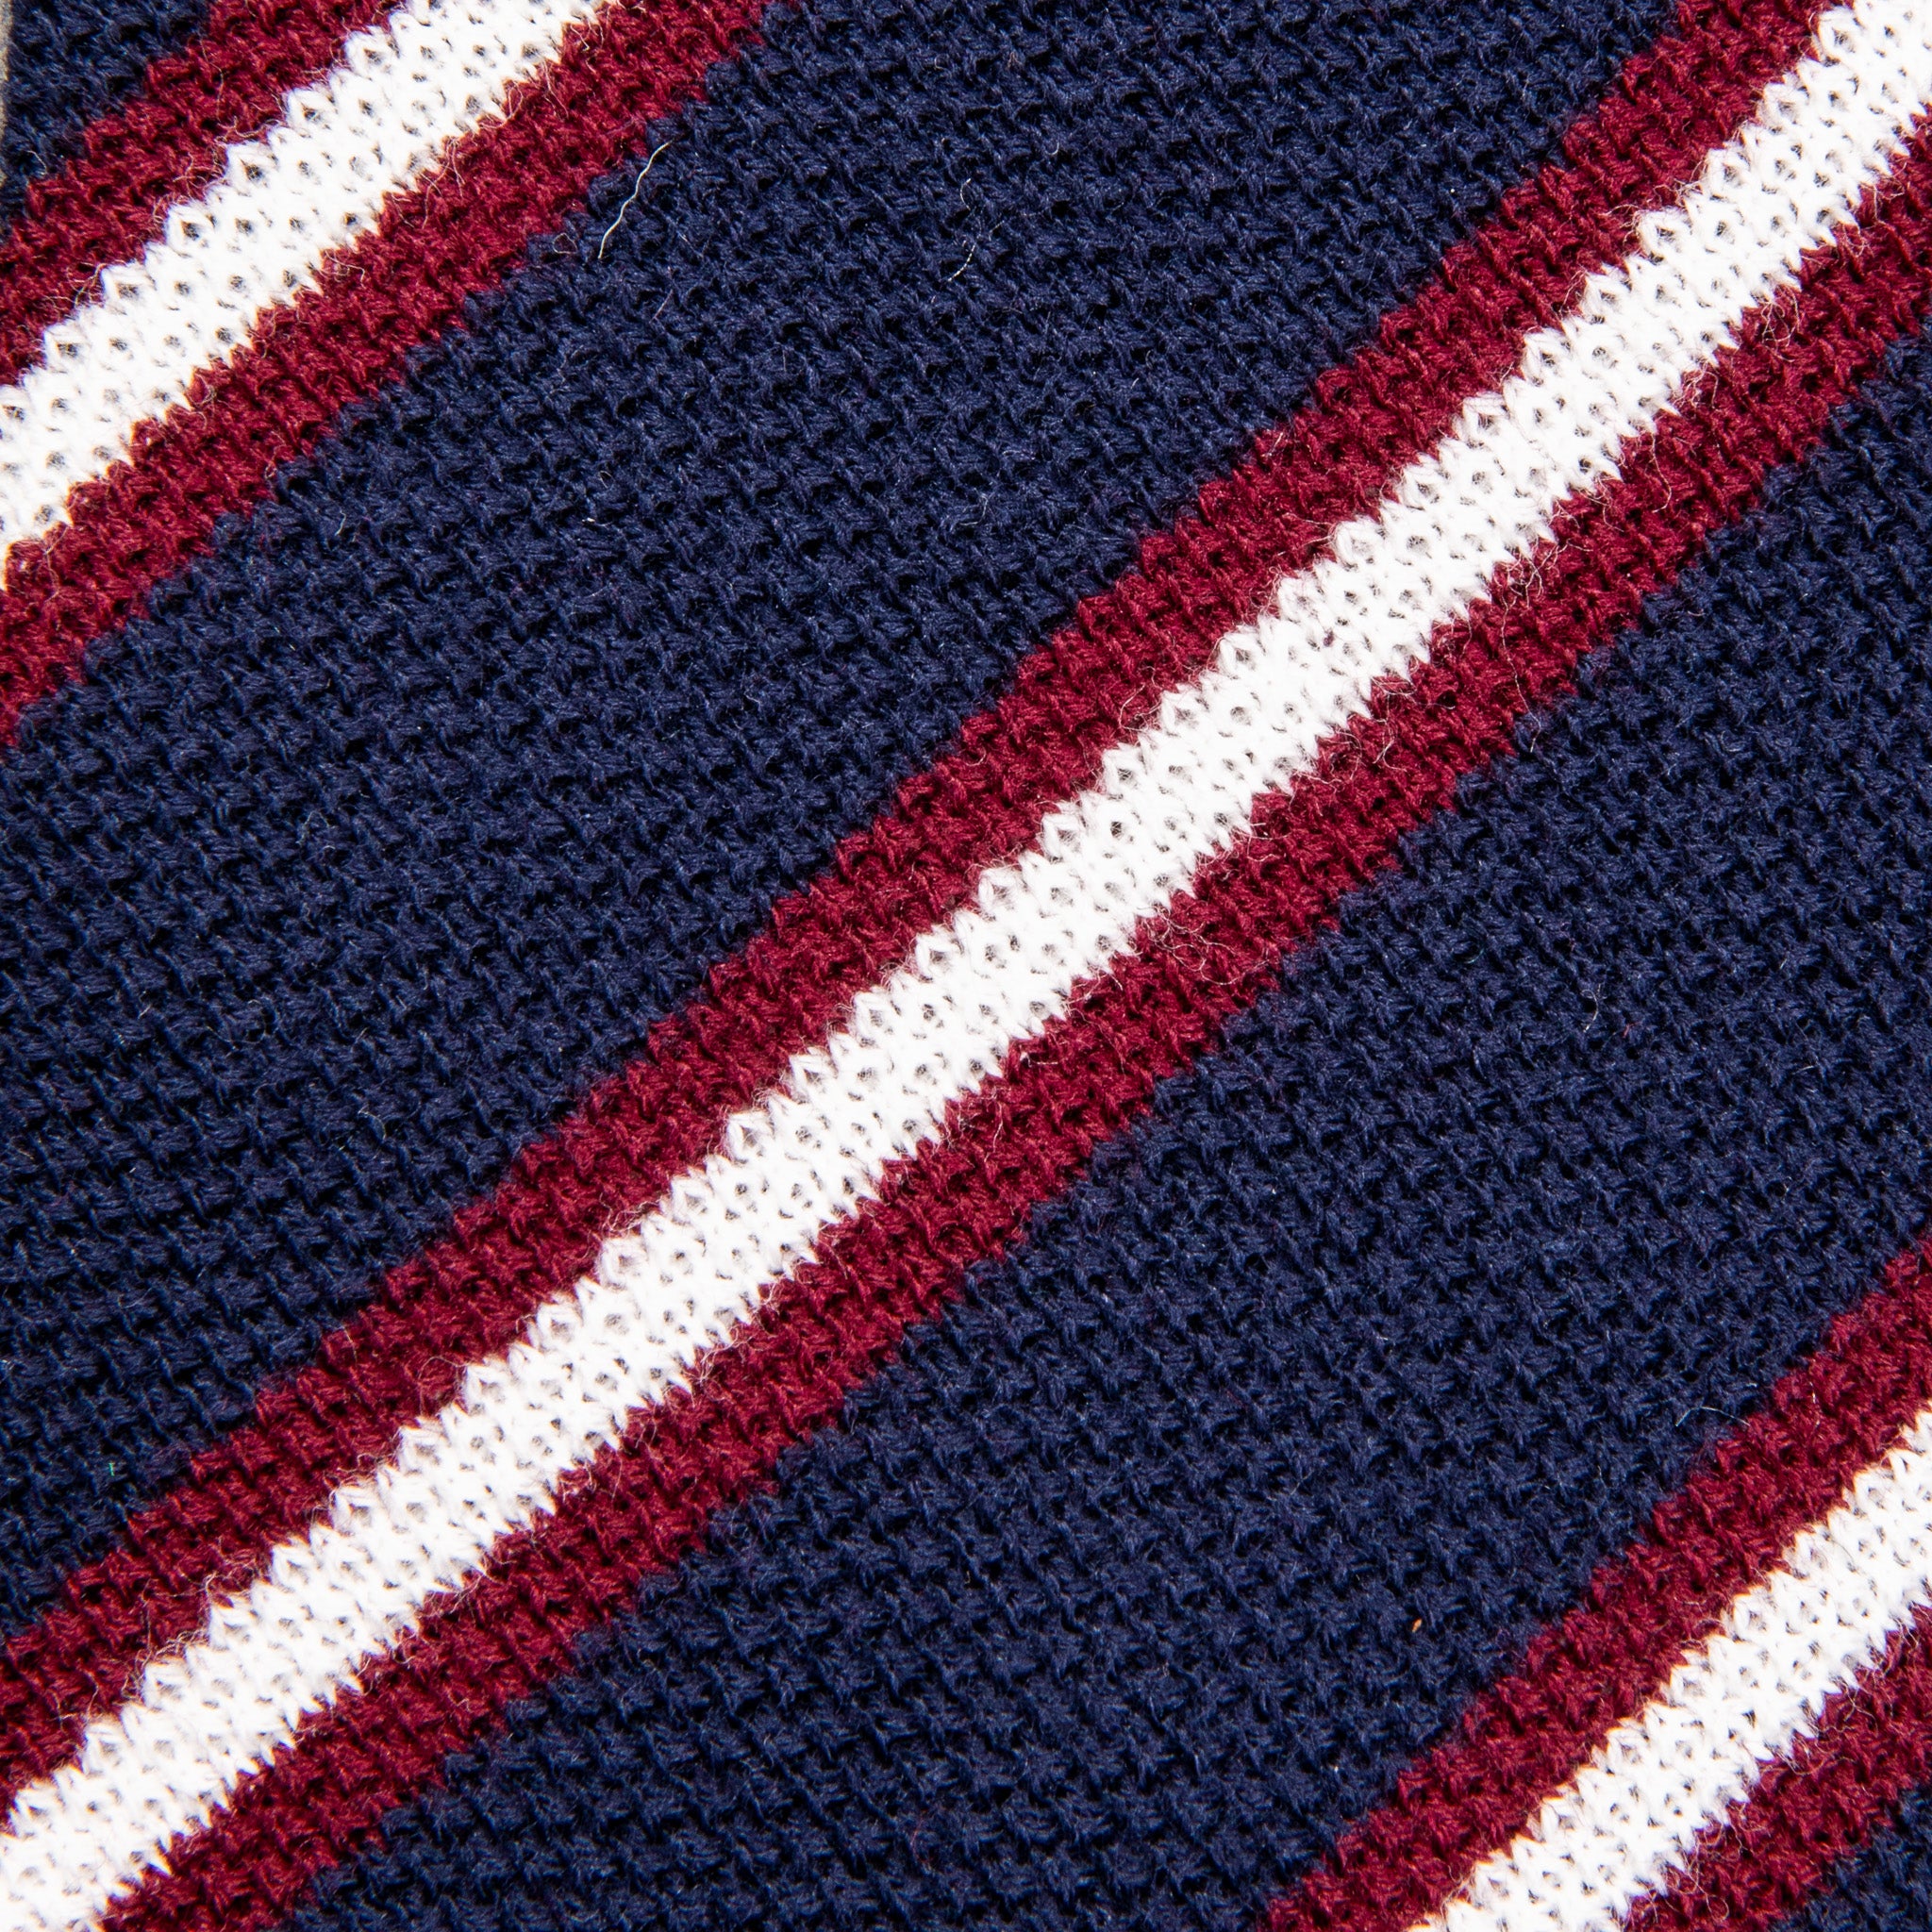 Engineered Garments Knit Tie Navy Stripe